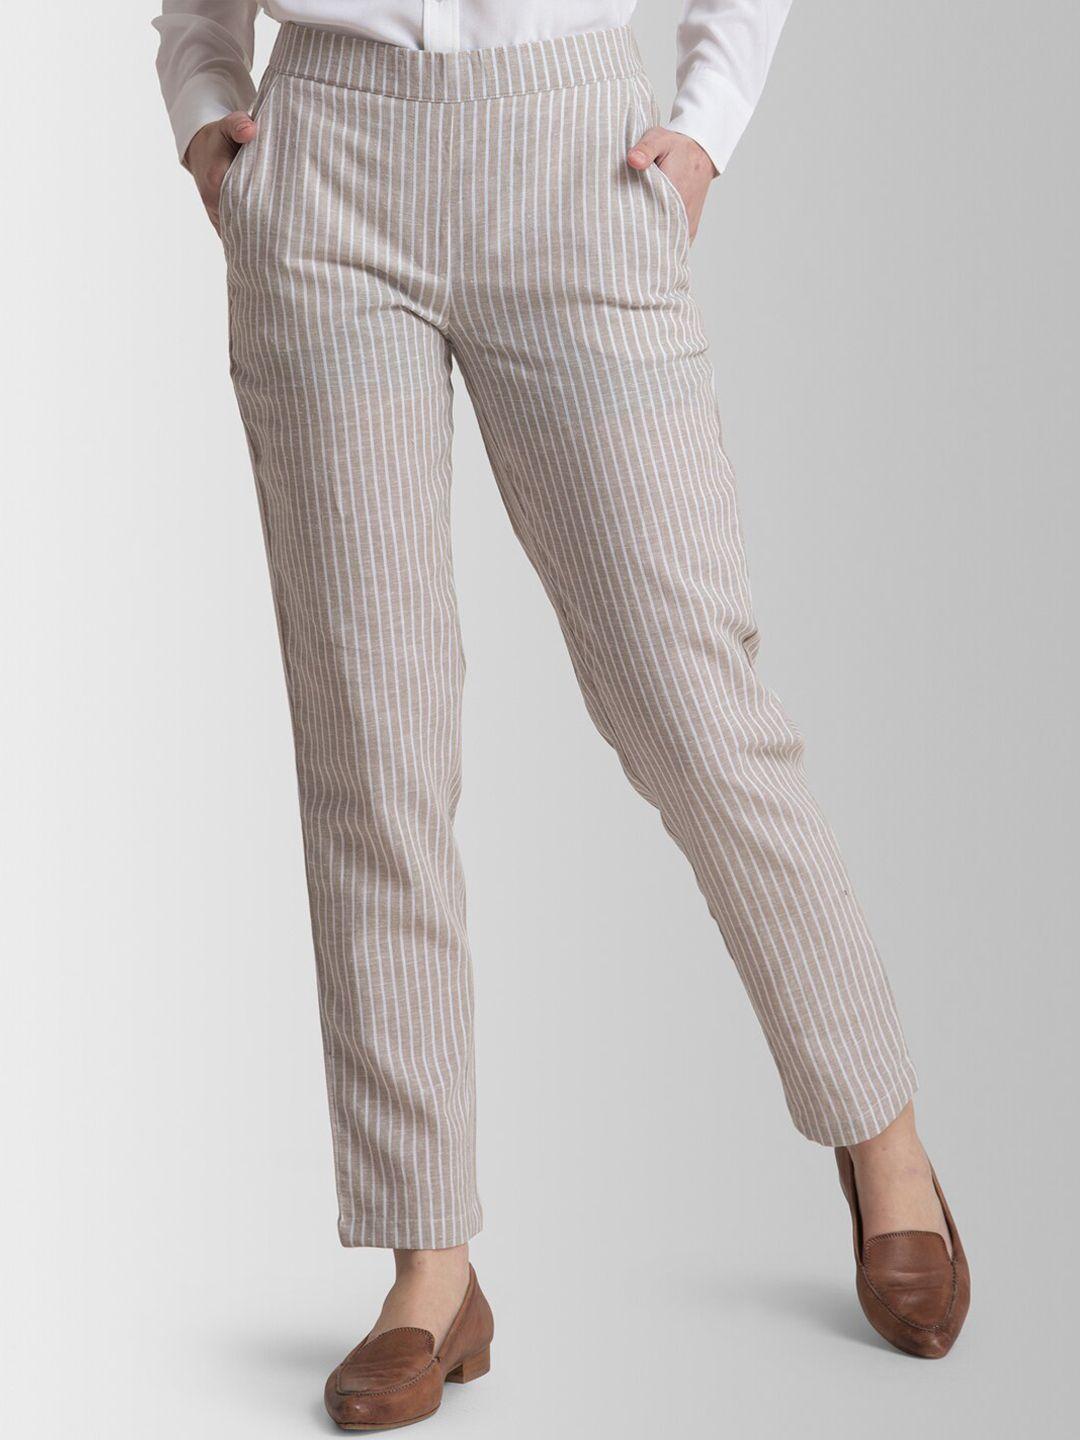 fablestreet-women-beige-slim-fit-striped-formal-trousers